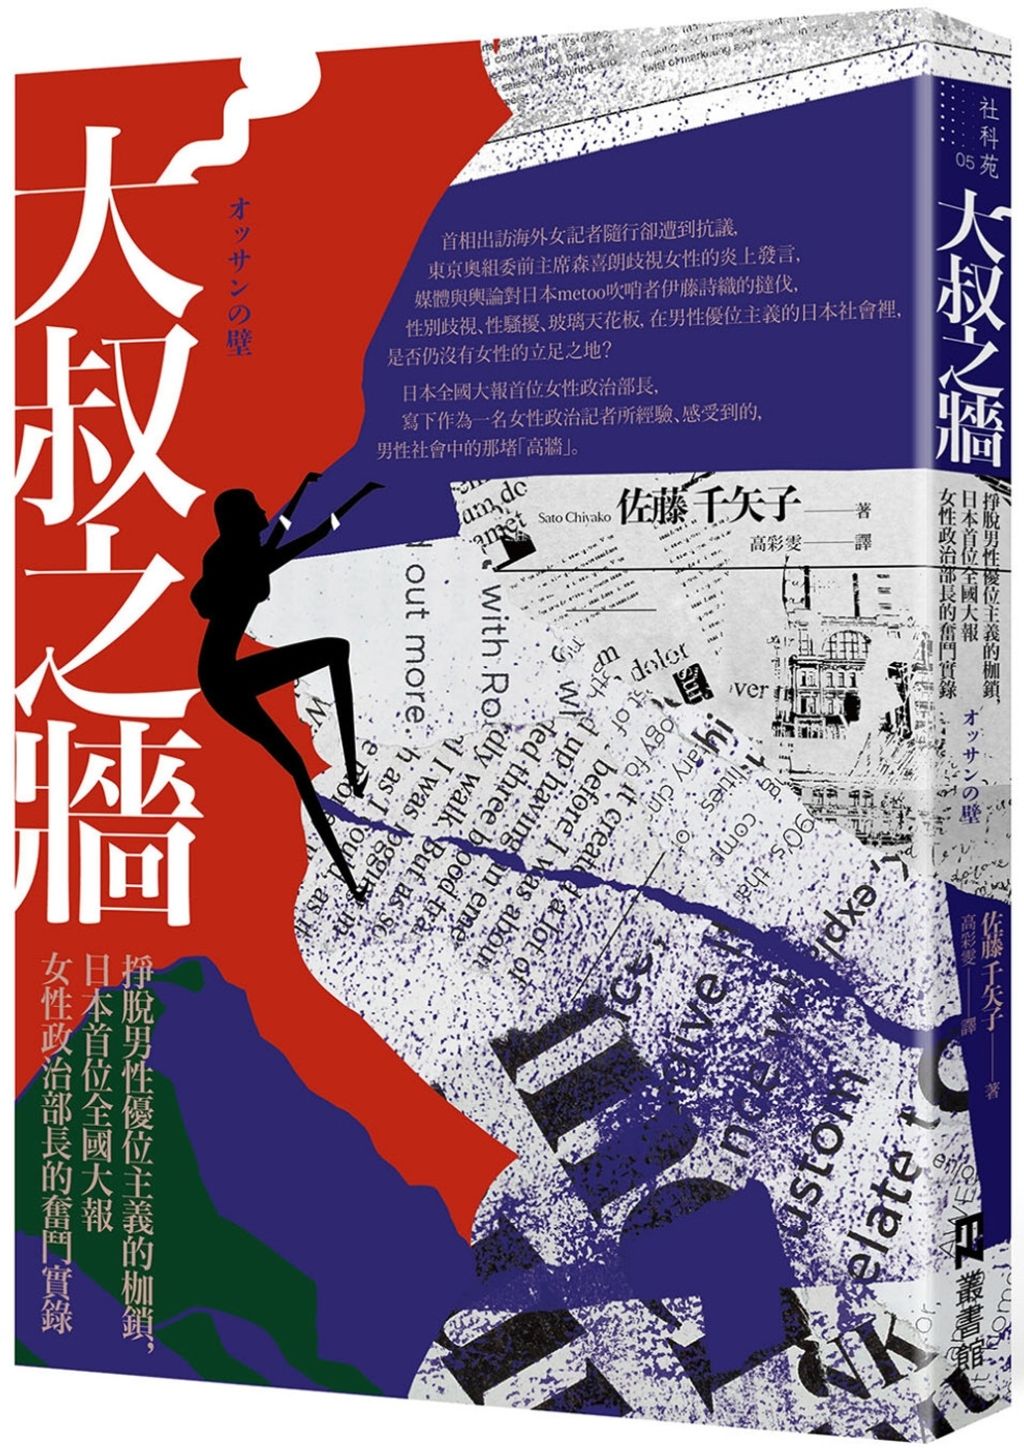 大叔之牆：掙脫男性優位主義的枷鎖，日本首位全國性大報女性政治部長的奮鬥實錄